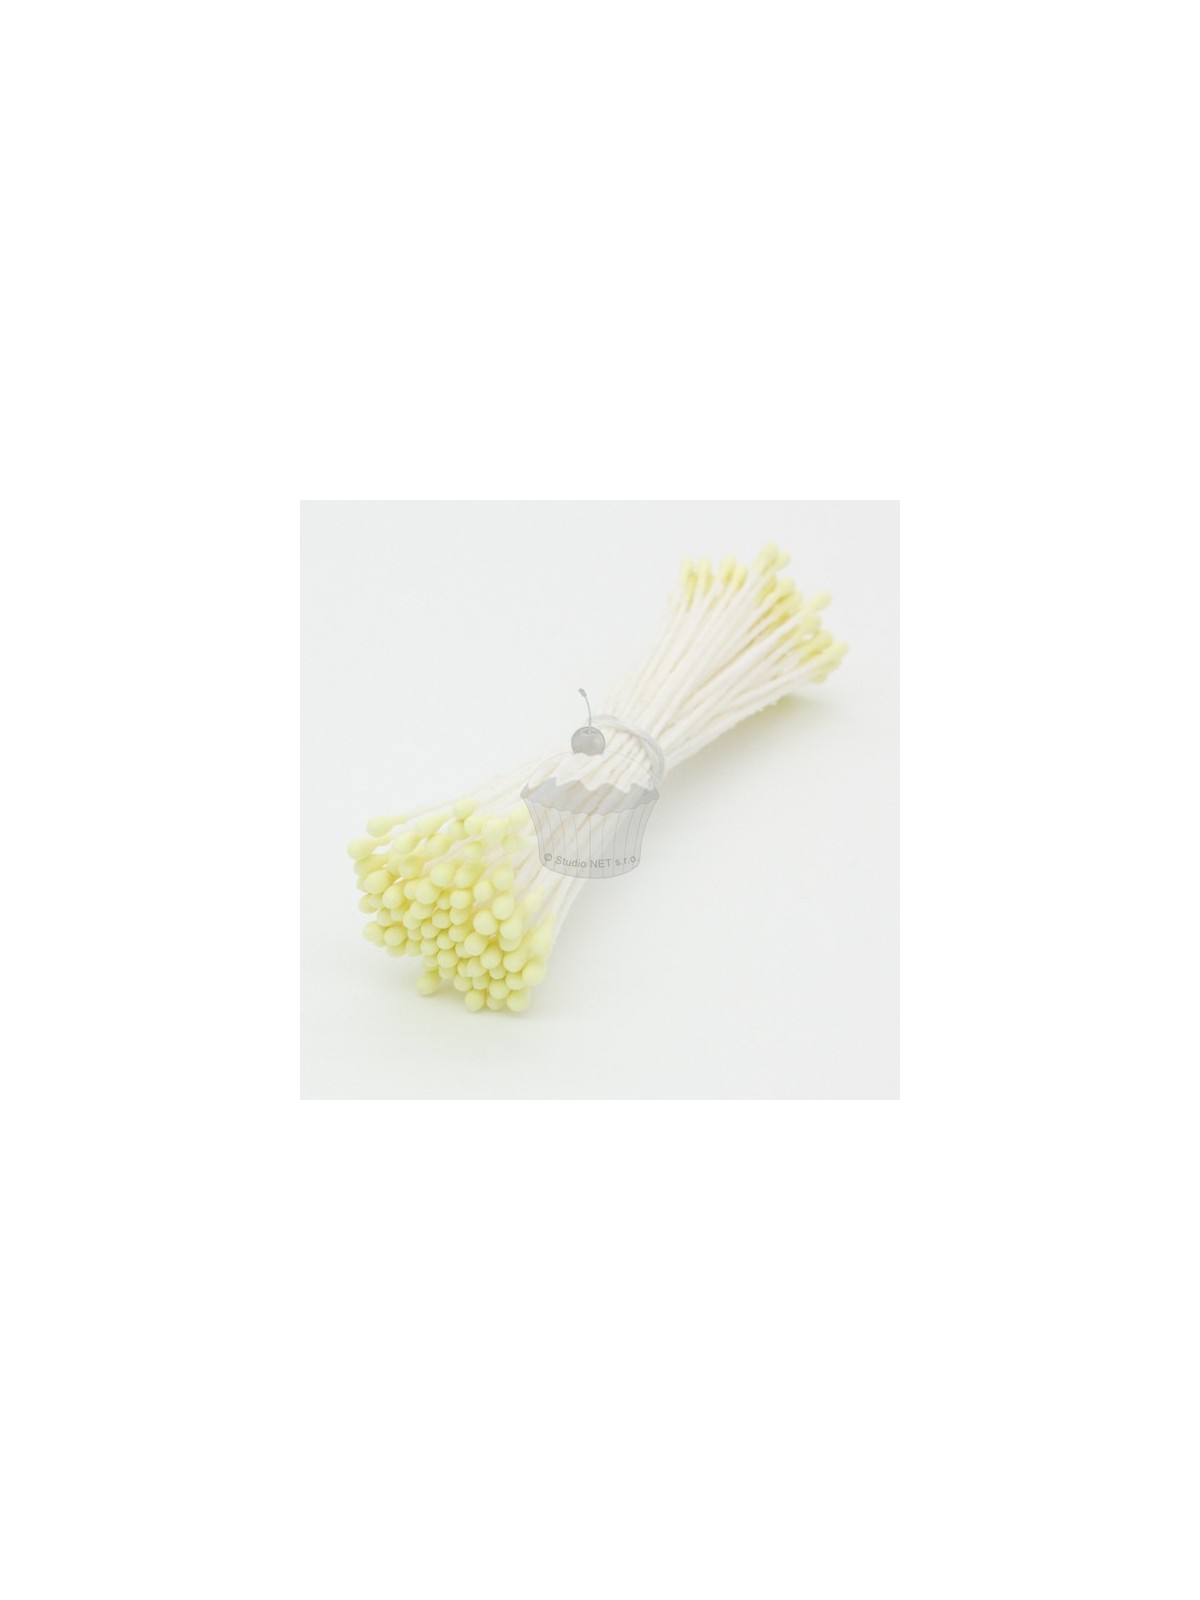 Caketools - kvetinové piestiky - malé žlté matnÉ - 72ks